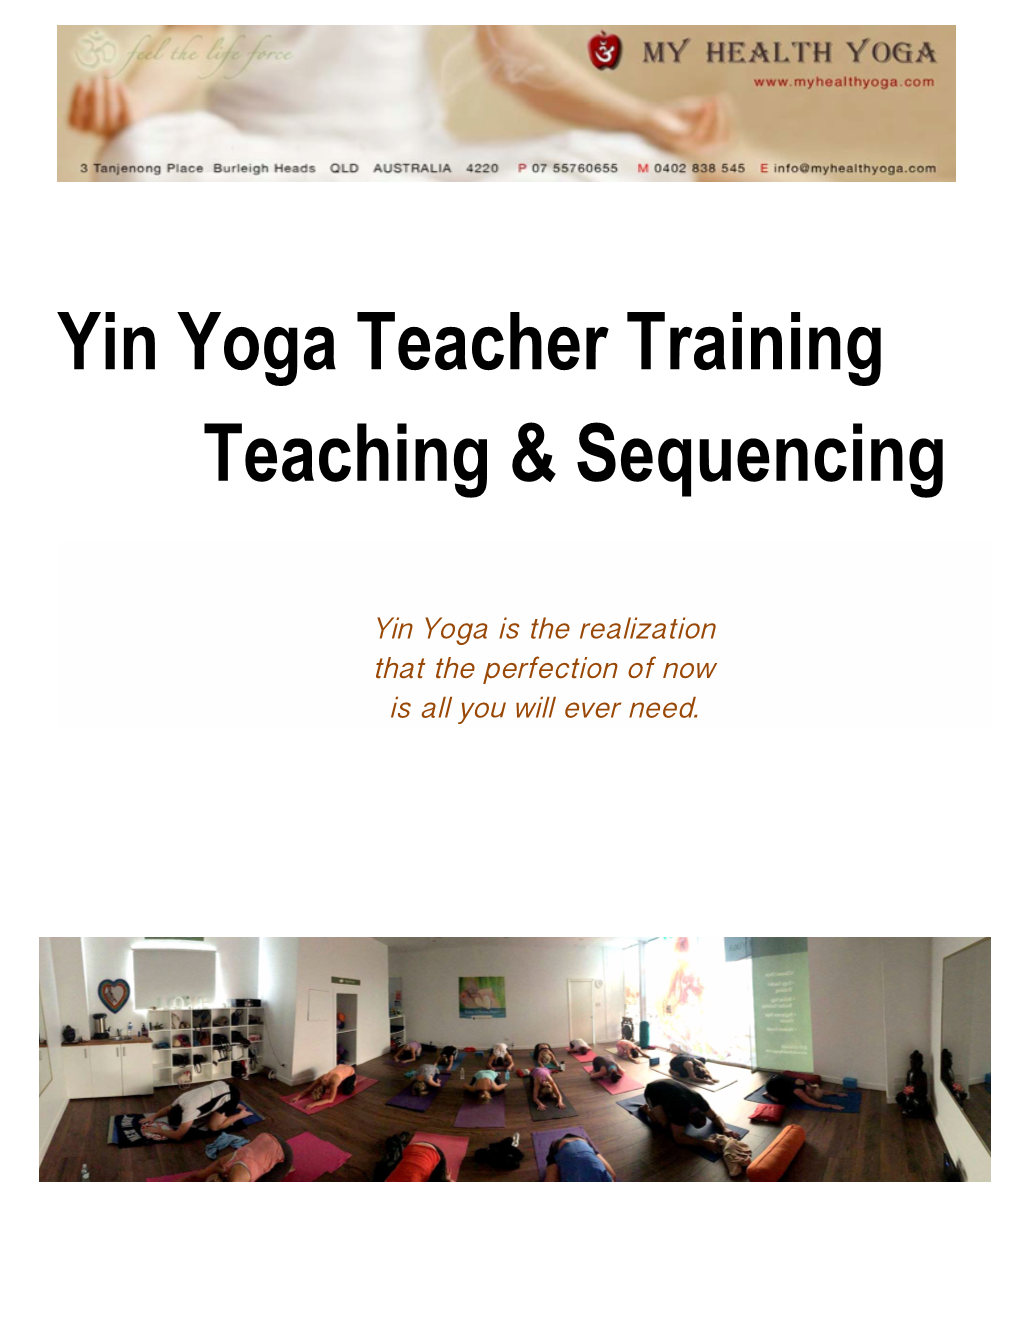 Yin Yoga Teacher Training Teaching & Sequencing